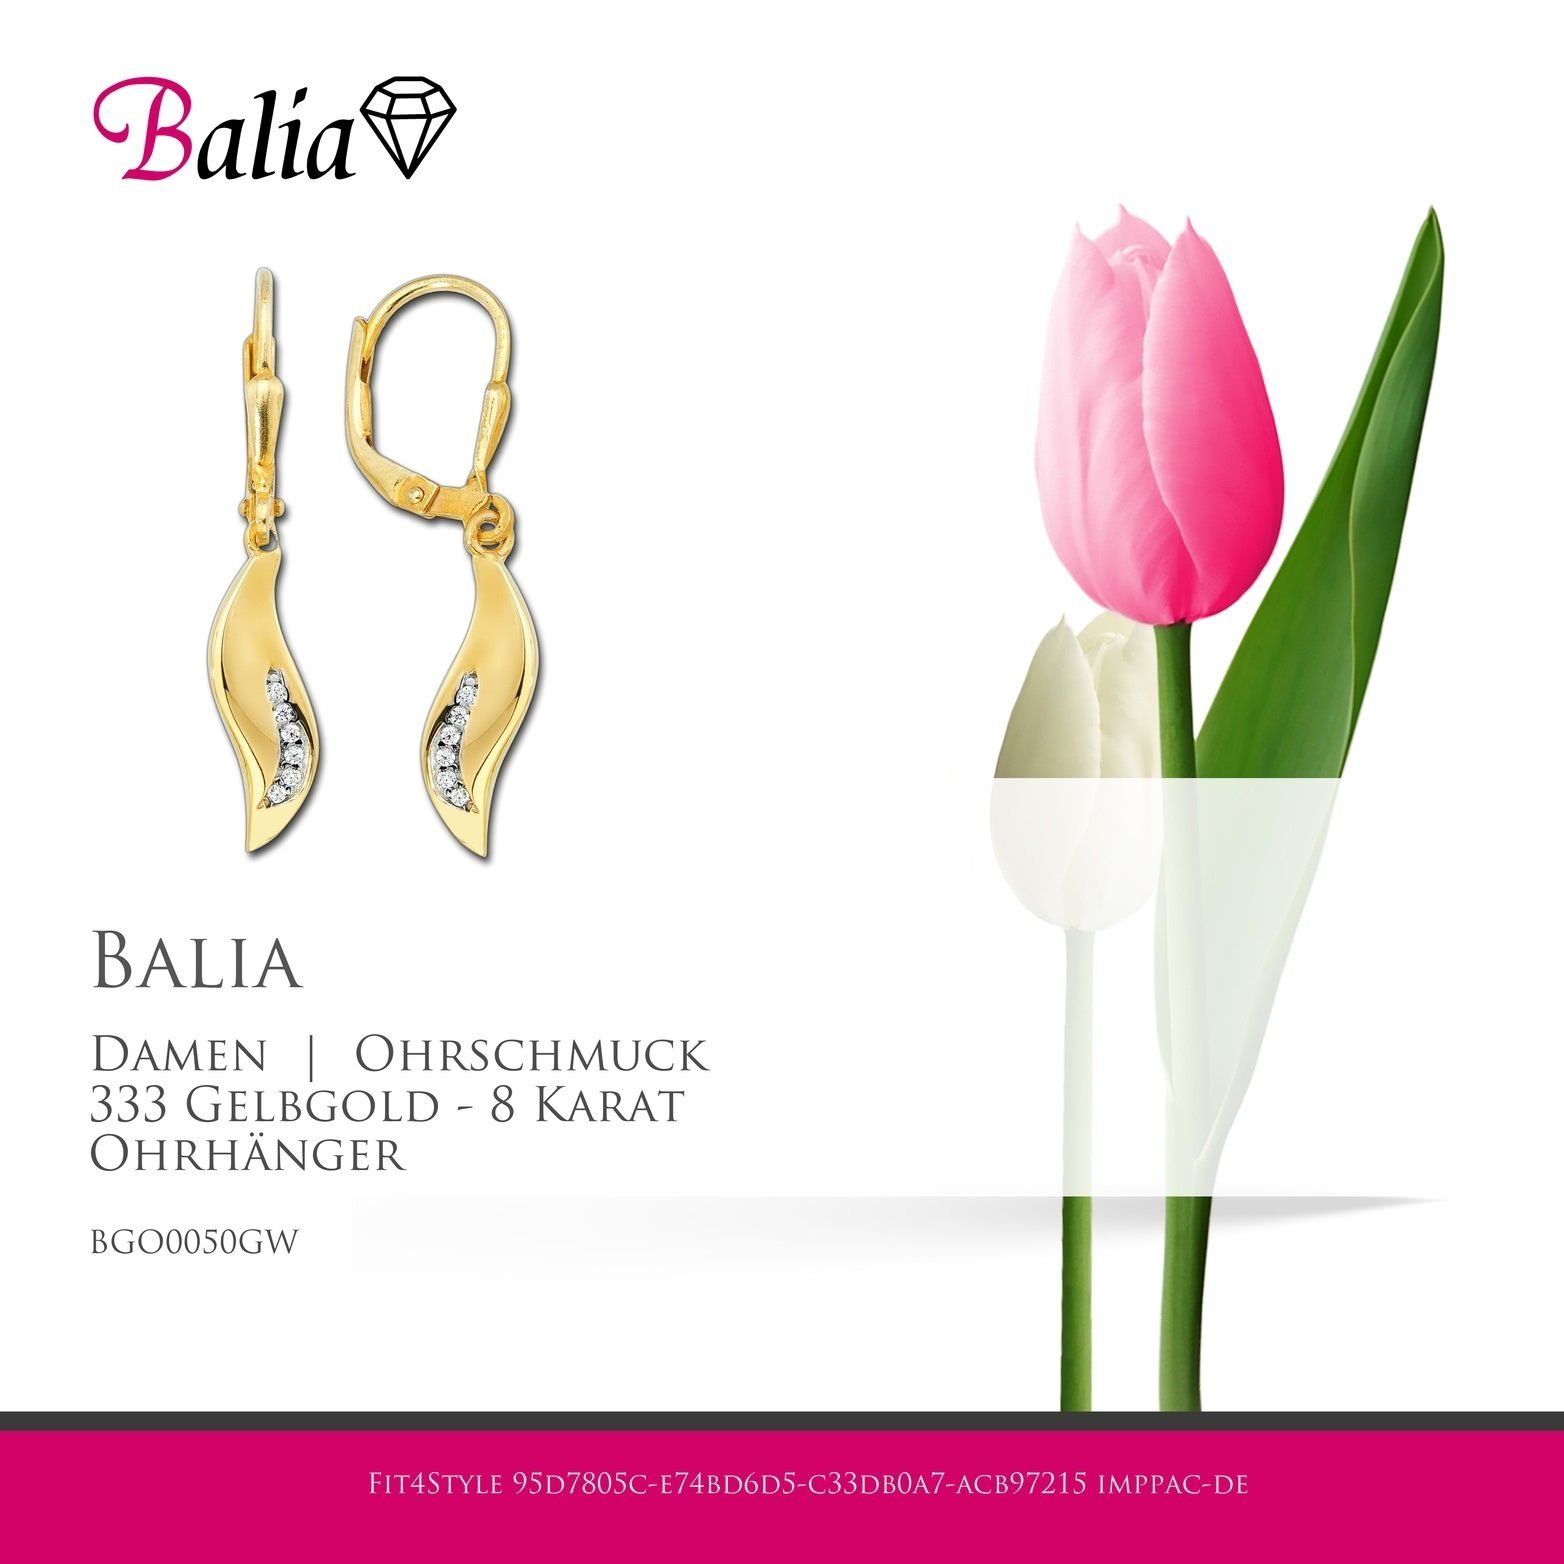 Balia Paar Ohrhänger Karat, Damen Gelbgold Welle Länge (Ohrhänger), Damen Ohrhänger Balia Gold 3,1cm 8 Creolen 333 - ca. aus für Welle